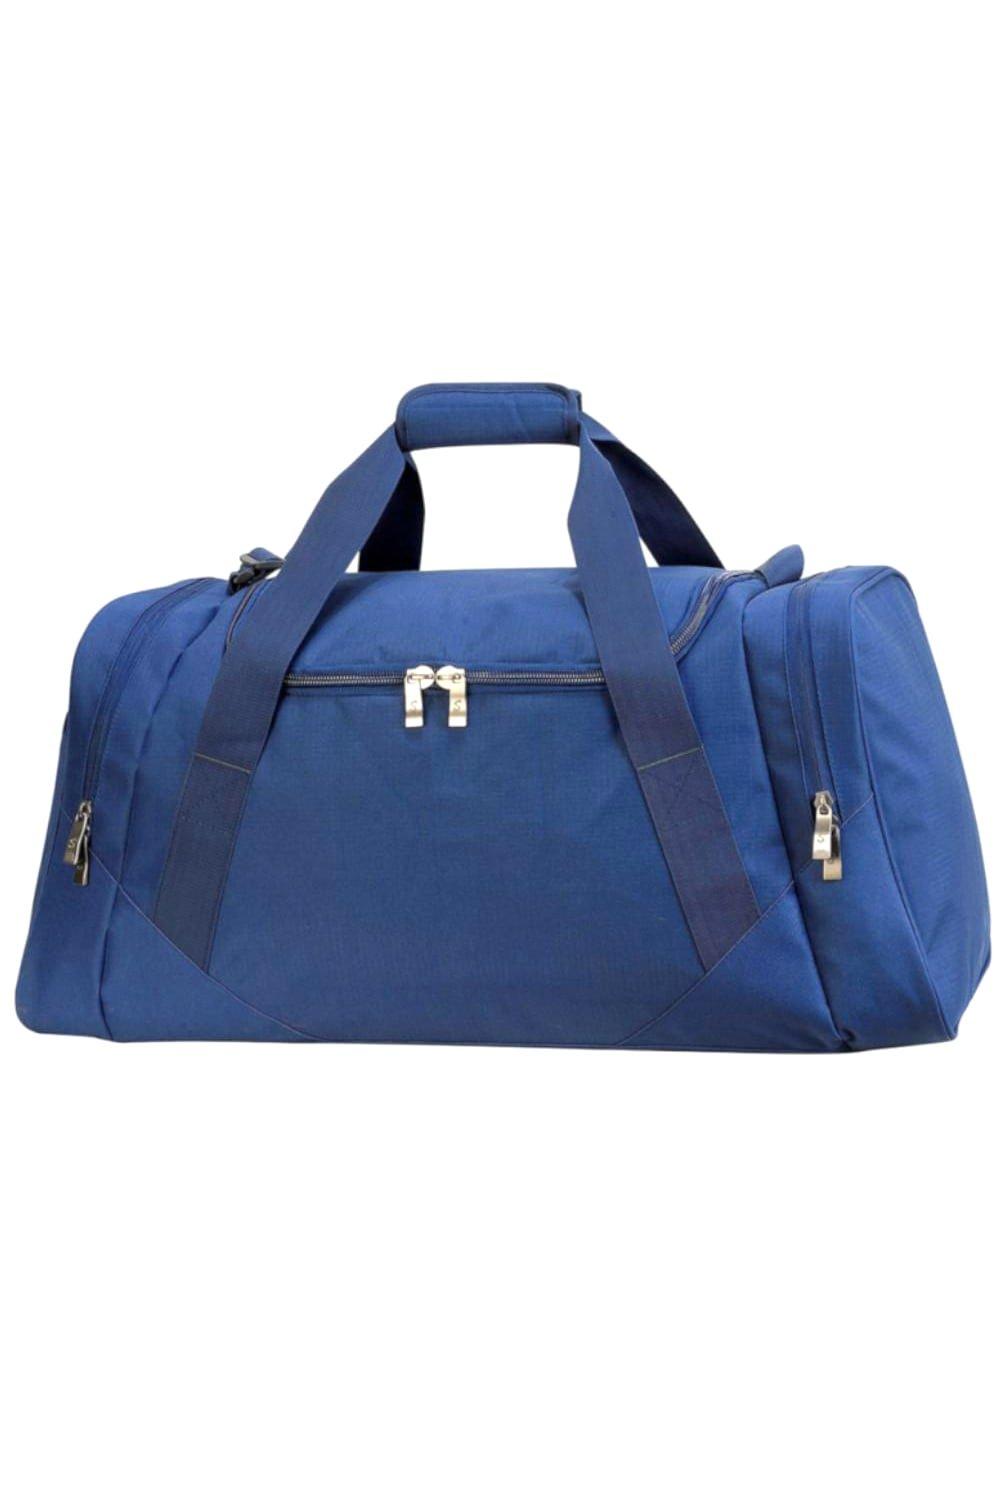 Дорожная сумка Aberdeen 70 литров Shugon, темно-синий сумка дорожная gorodok50 см отделение для обуви плечевой ремень синий